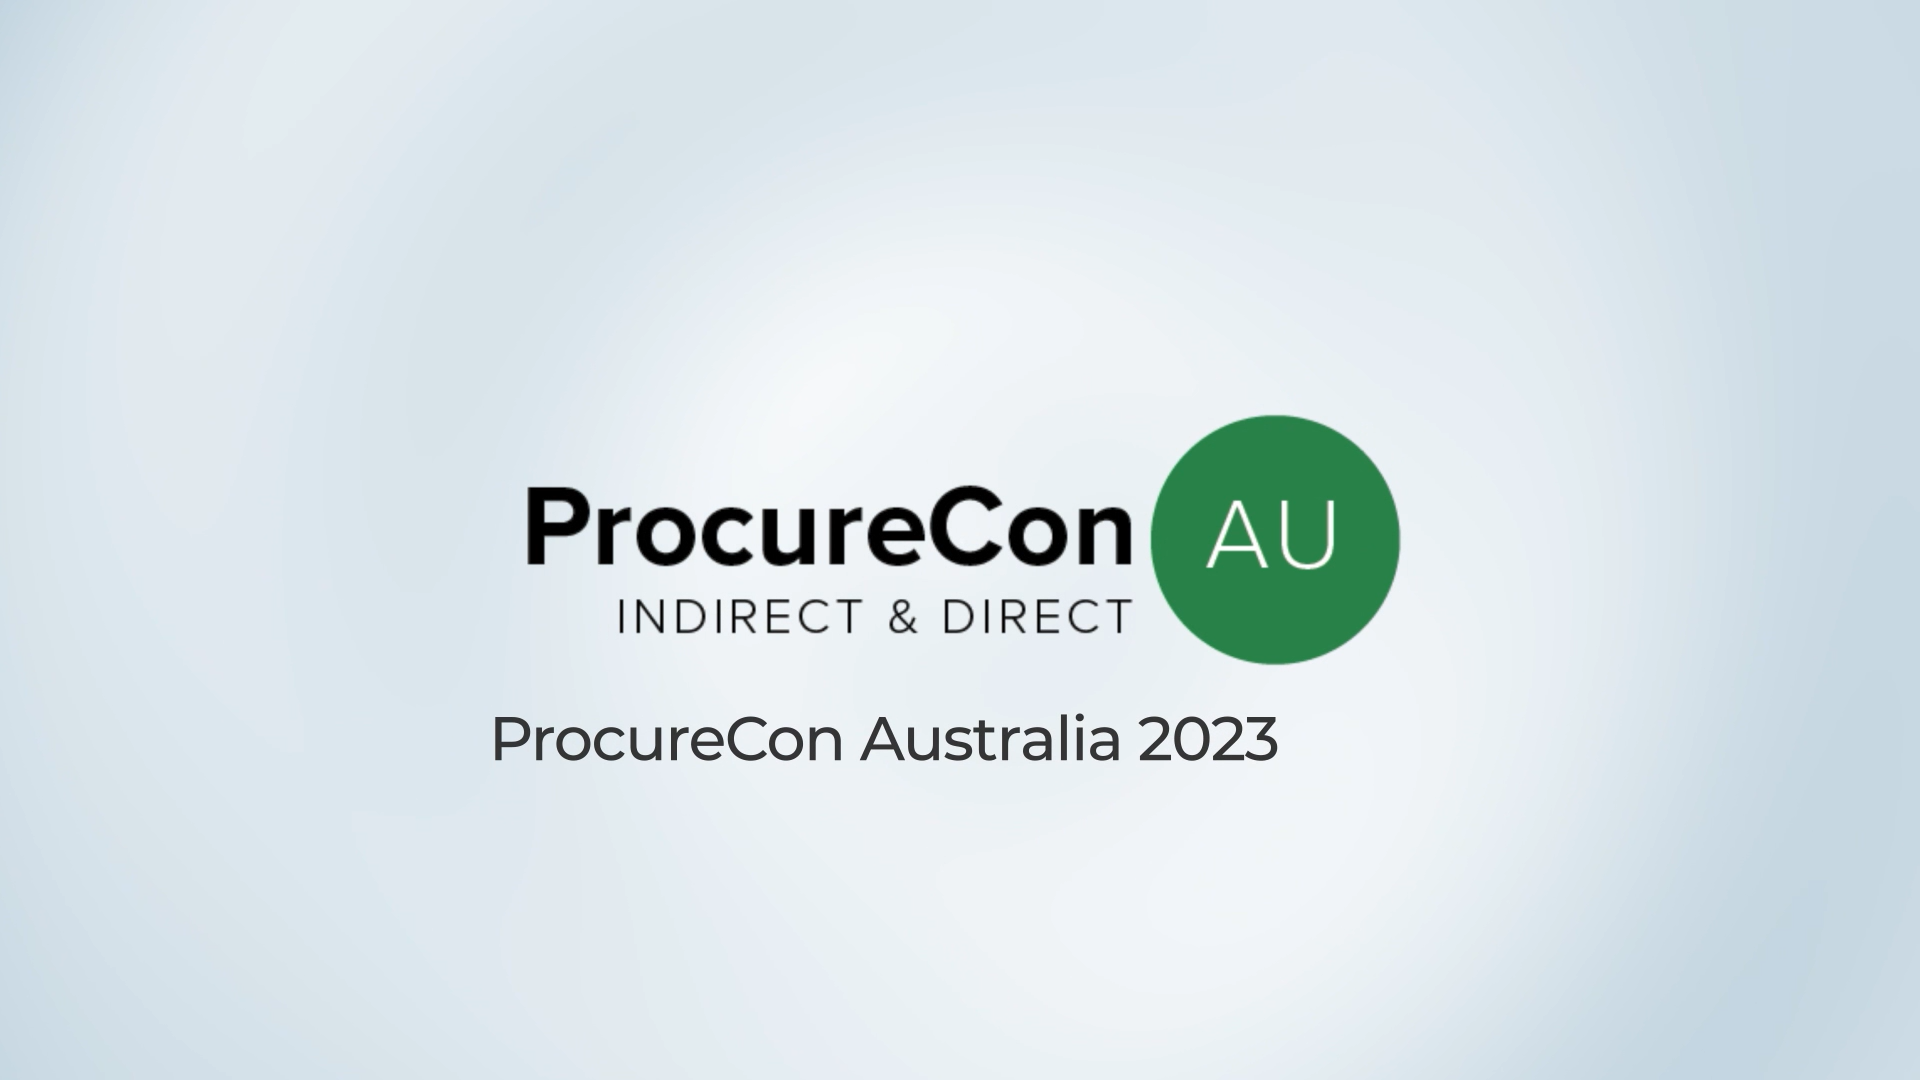 ProcureCon AU 2023